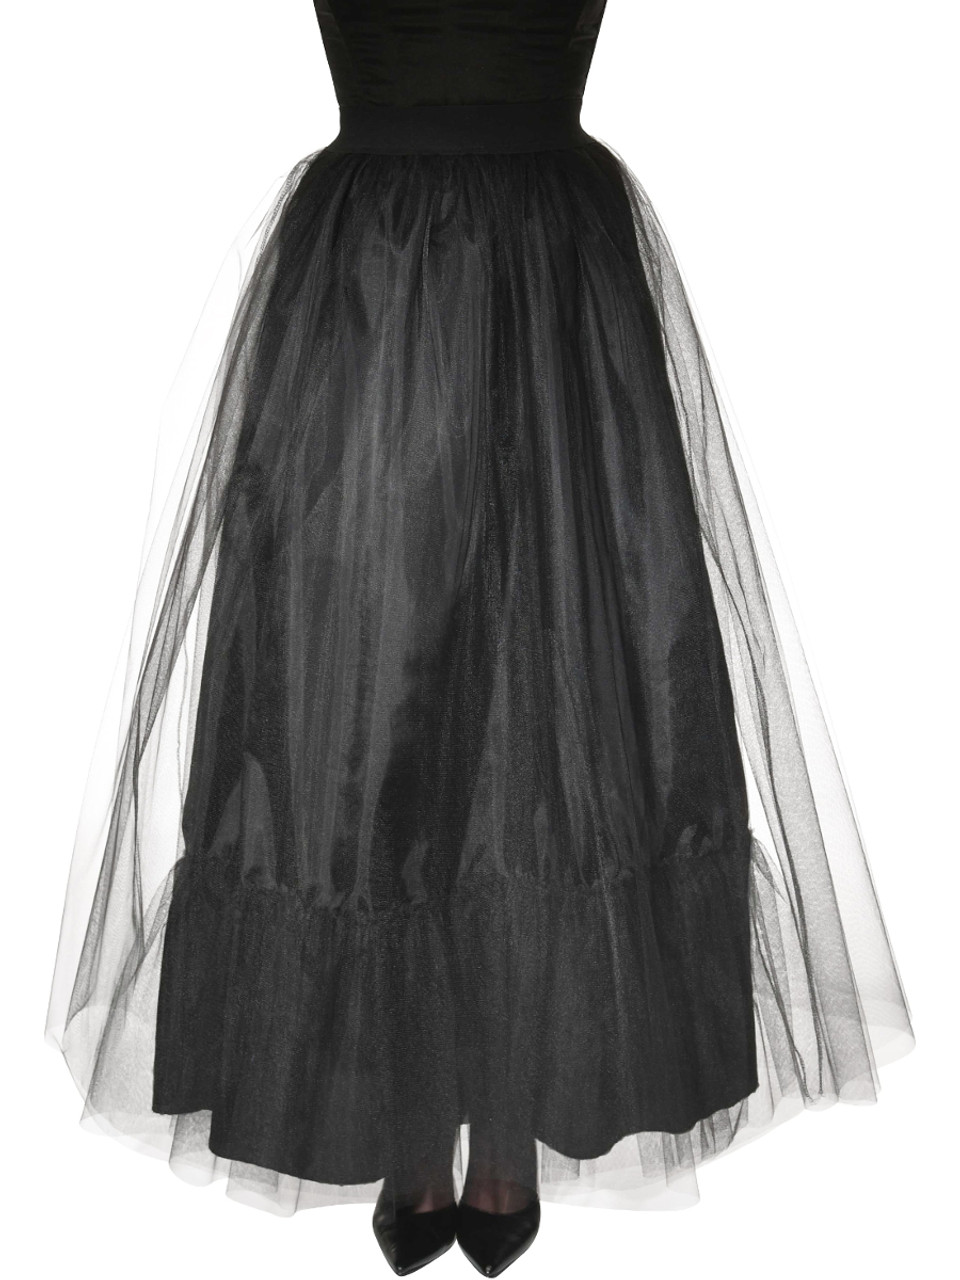 Women's Gothic Vampire Skirt